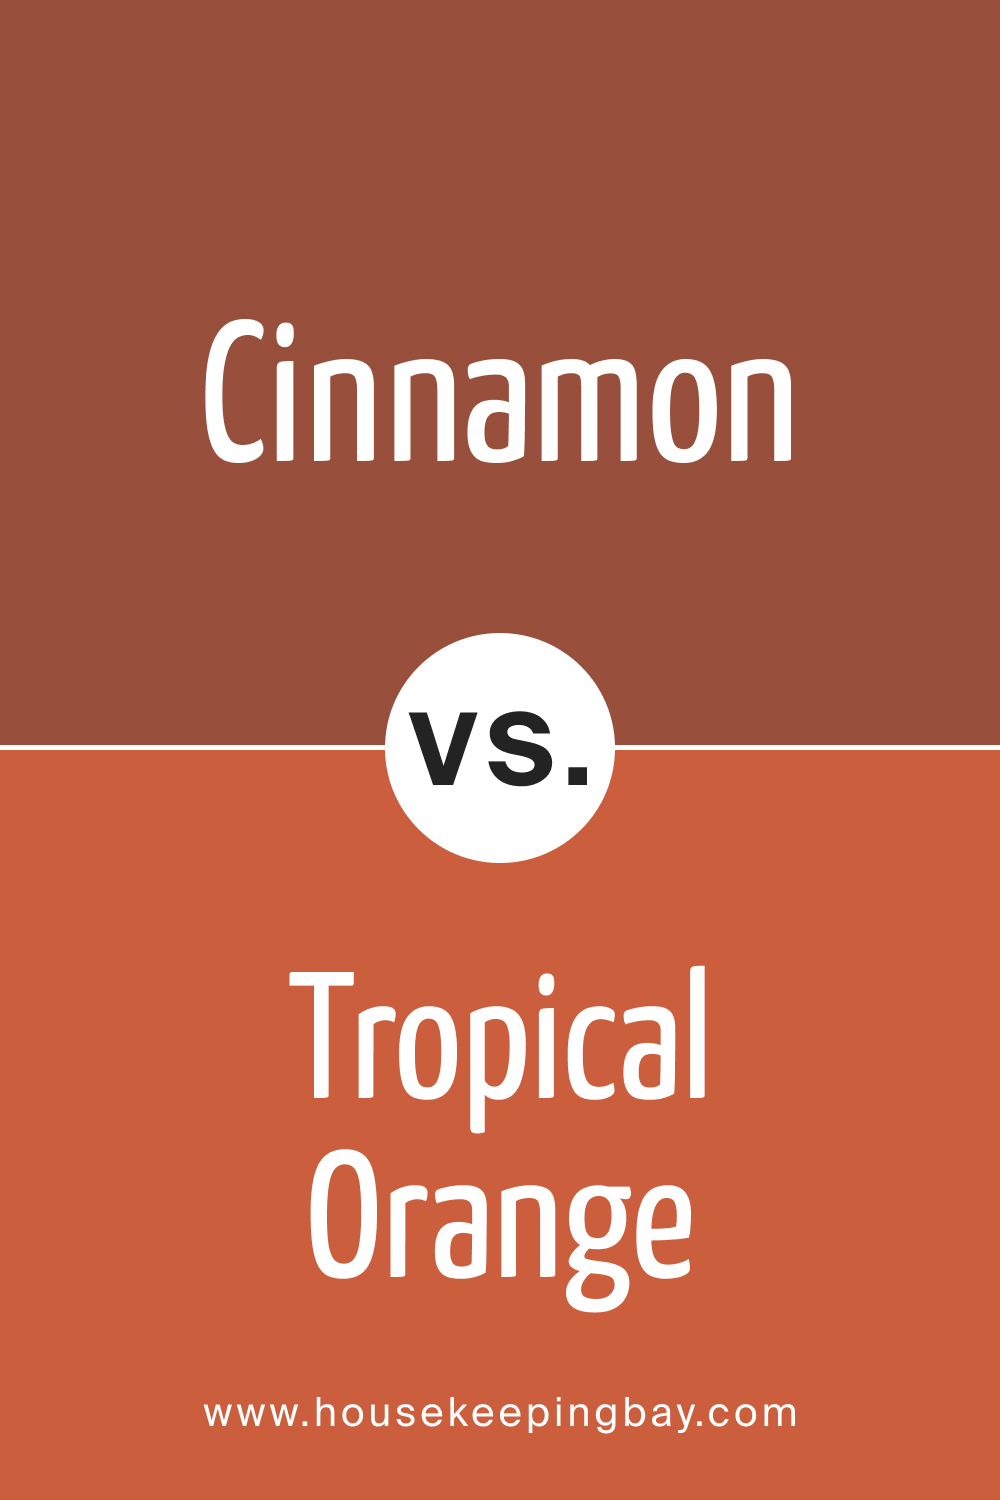 innamon 2174 20 vs. BM 2170 2 Tropical Orange